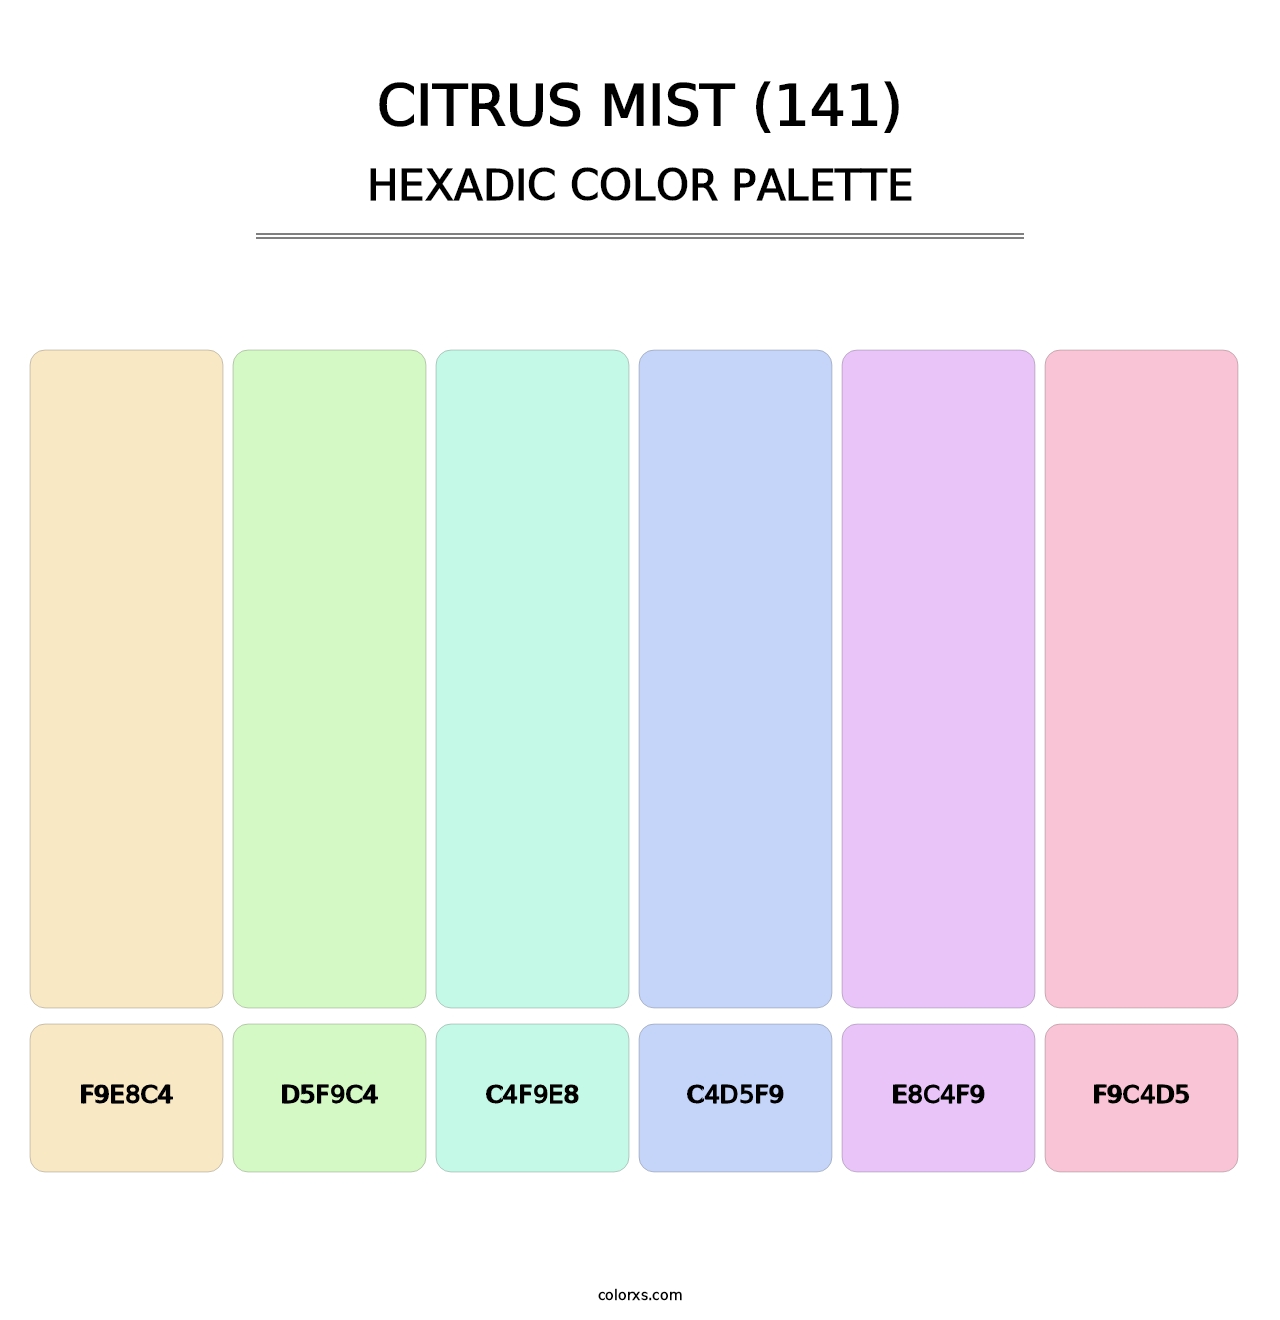 Citrus Mist (141) - Hexadic Color Palette